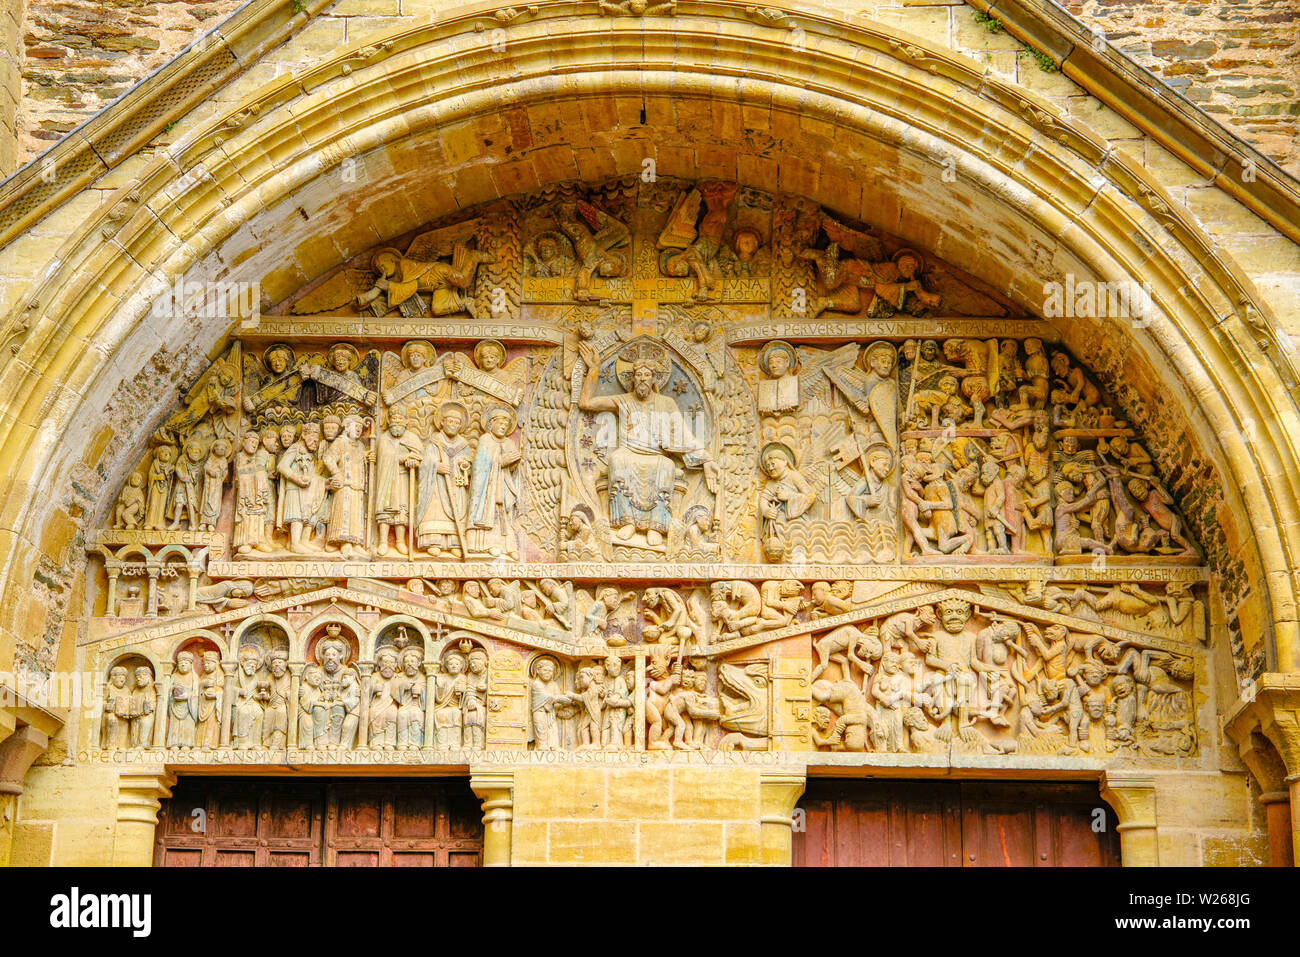 Le tympan montrant Jugement Dernier, Conques abbaye romane à l'église Sainte-Foy, Occitanie, France. Banque D'Images